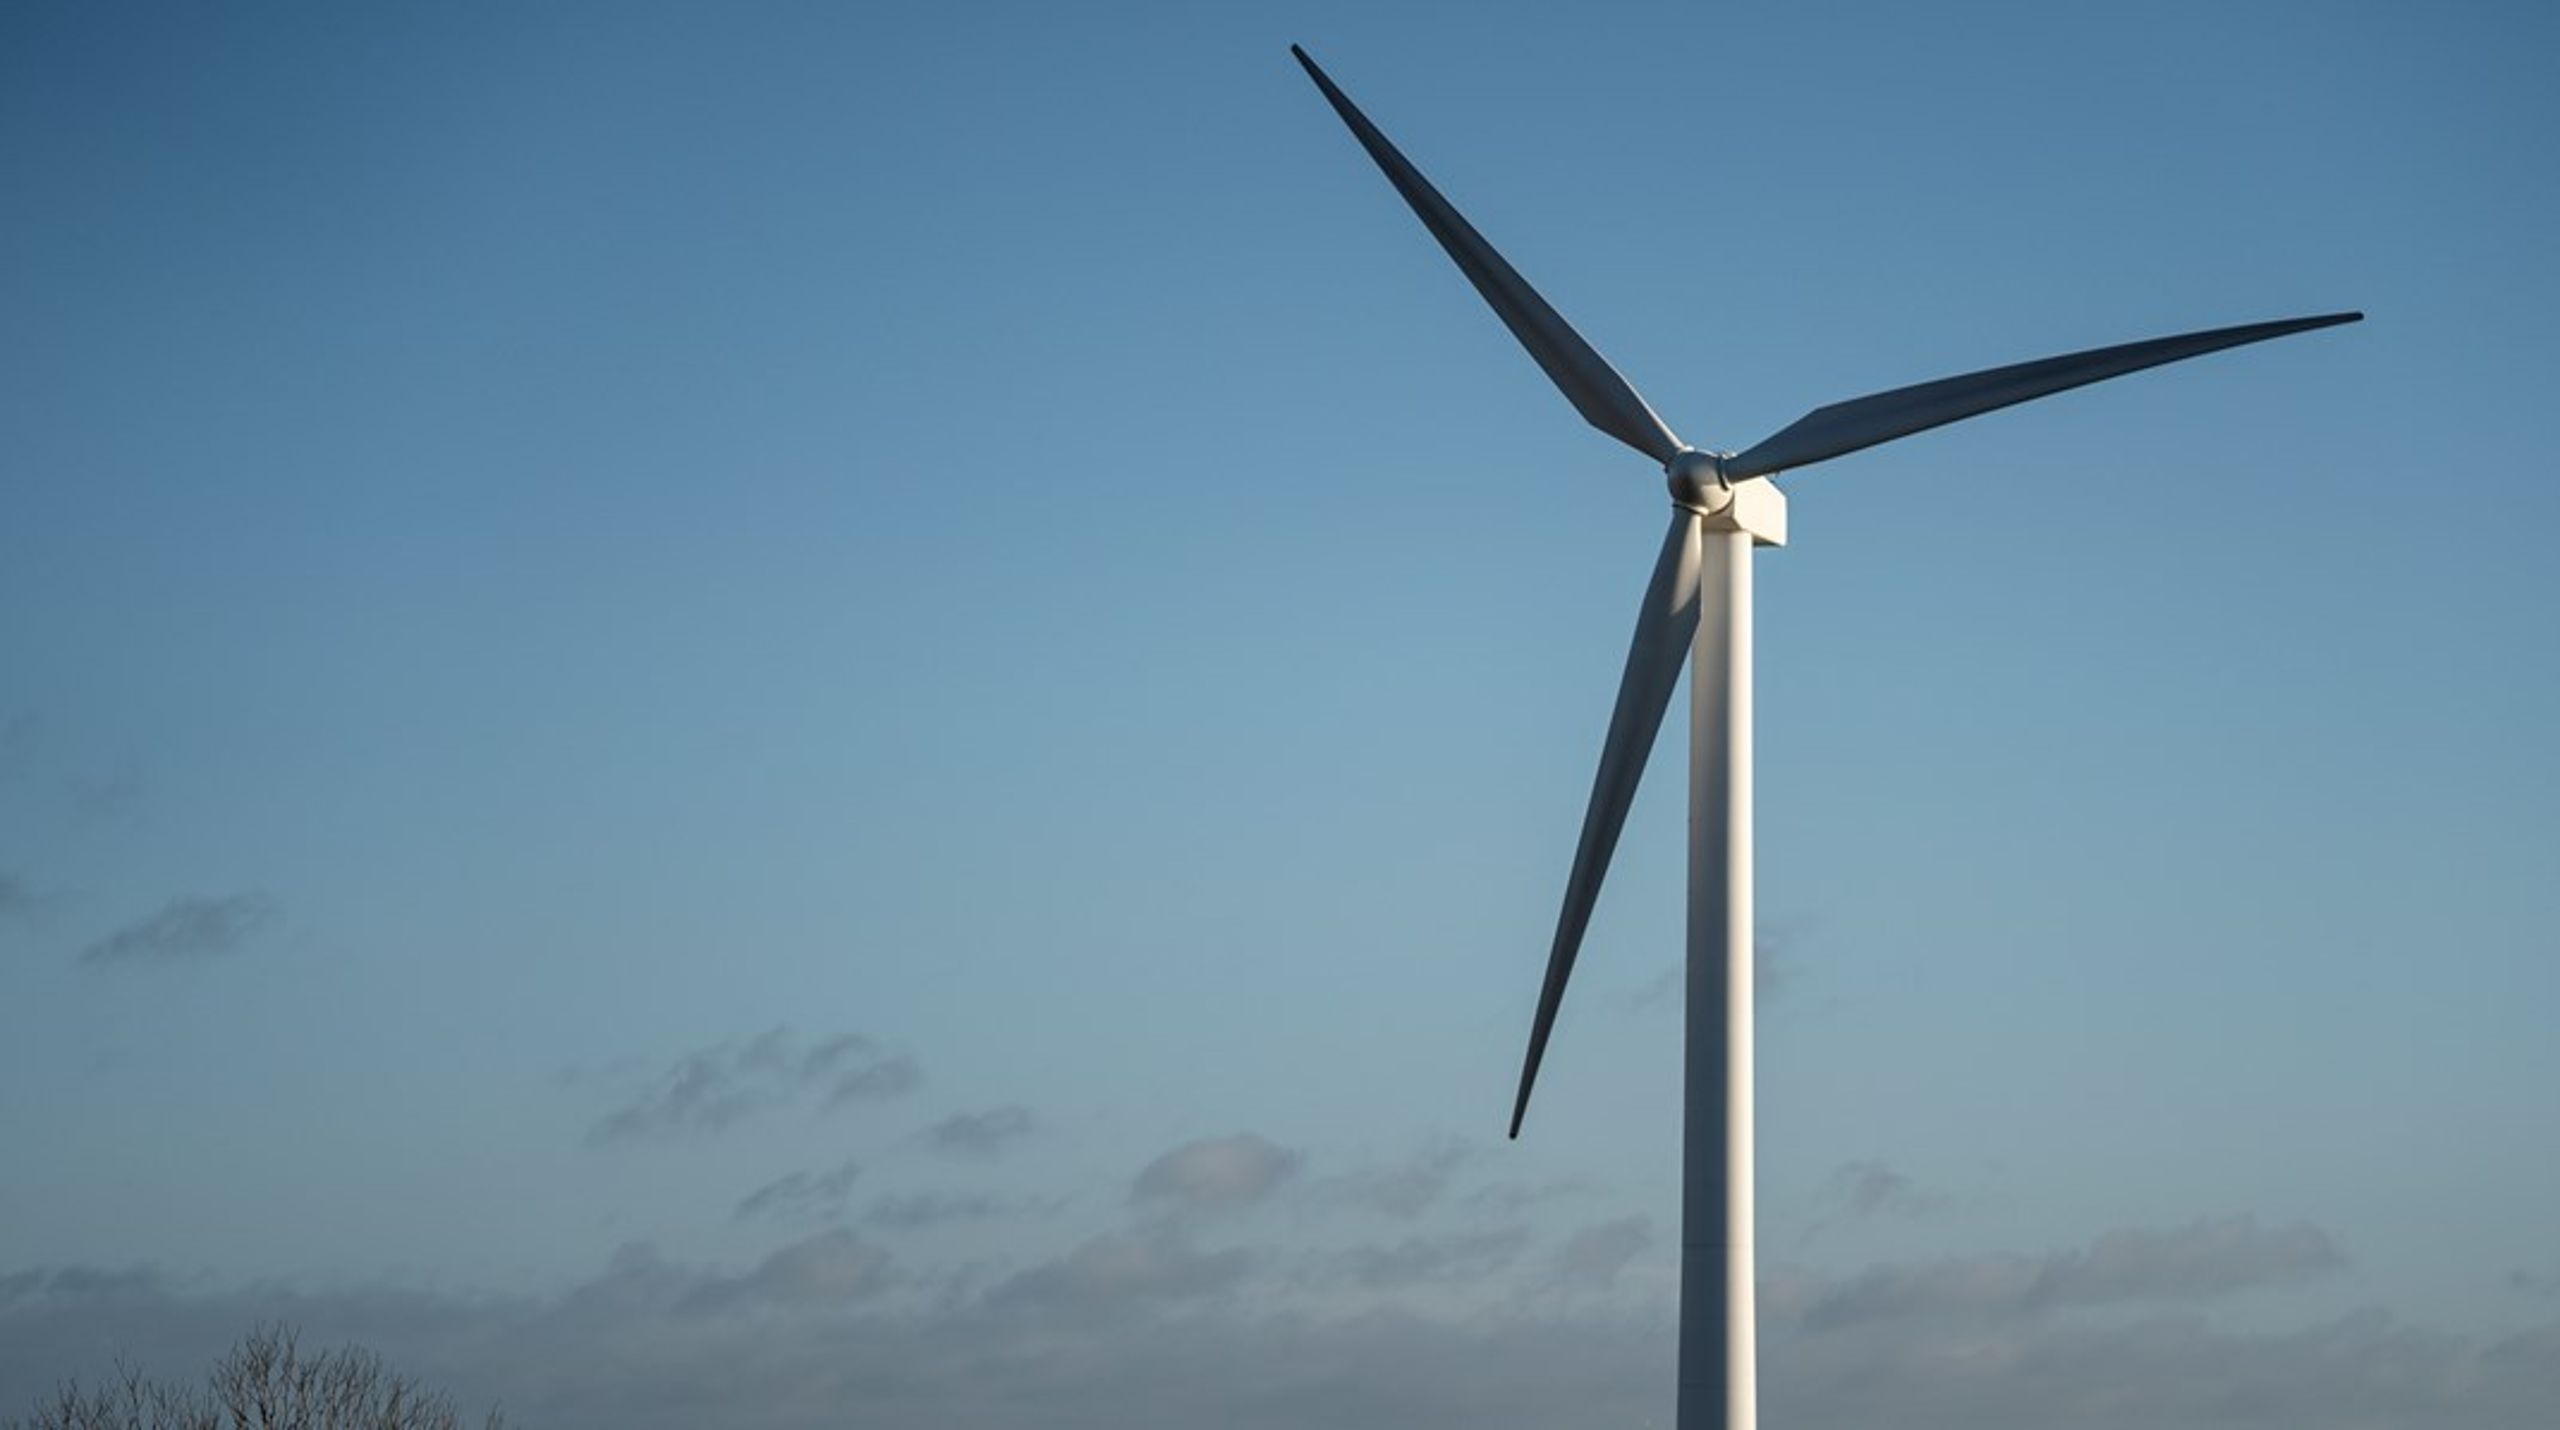 En lækket retsakt skaber et bekymrende fundament for udviklingen af Power-to-X-teknologi, mener Wind Denmark, Brintbranchen og Drivkraft Danmark.